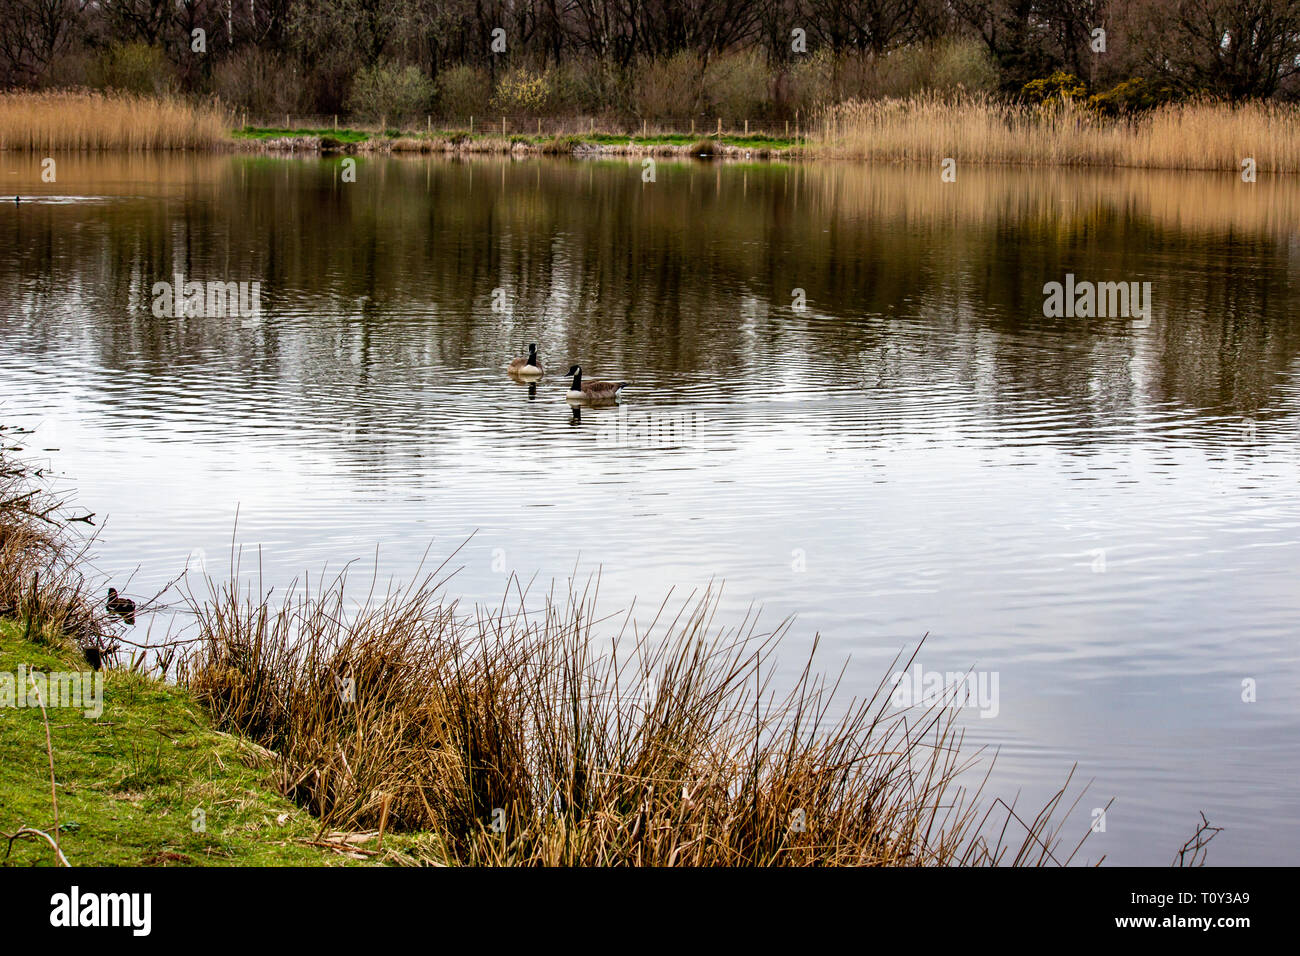 Schön Uk Wetter, schöner Spaziergang am Nachmittag im öffentlichen Park mit einem kleinen See namens Lindow in Wilmslow Cheshire Stockfoto